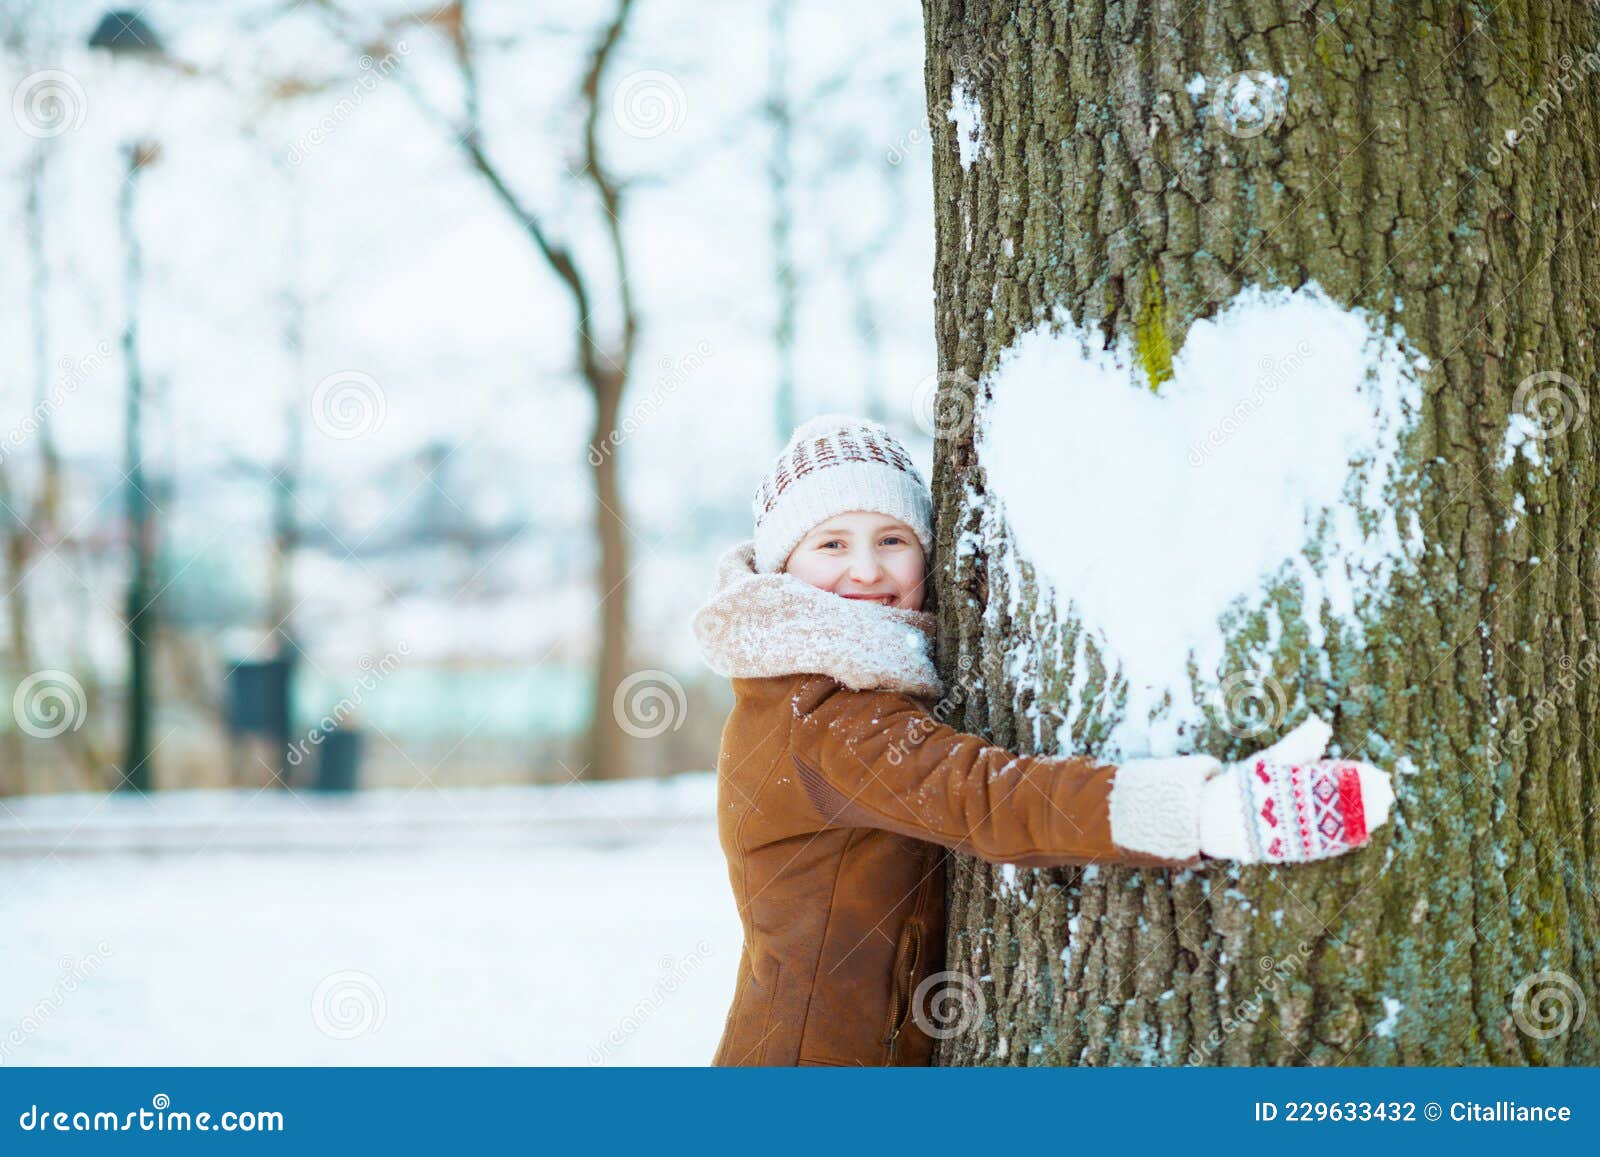 冬季大雪二十四节气情侣拥抱海报素材模板下载 - 图巨人